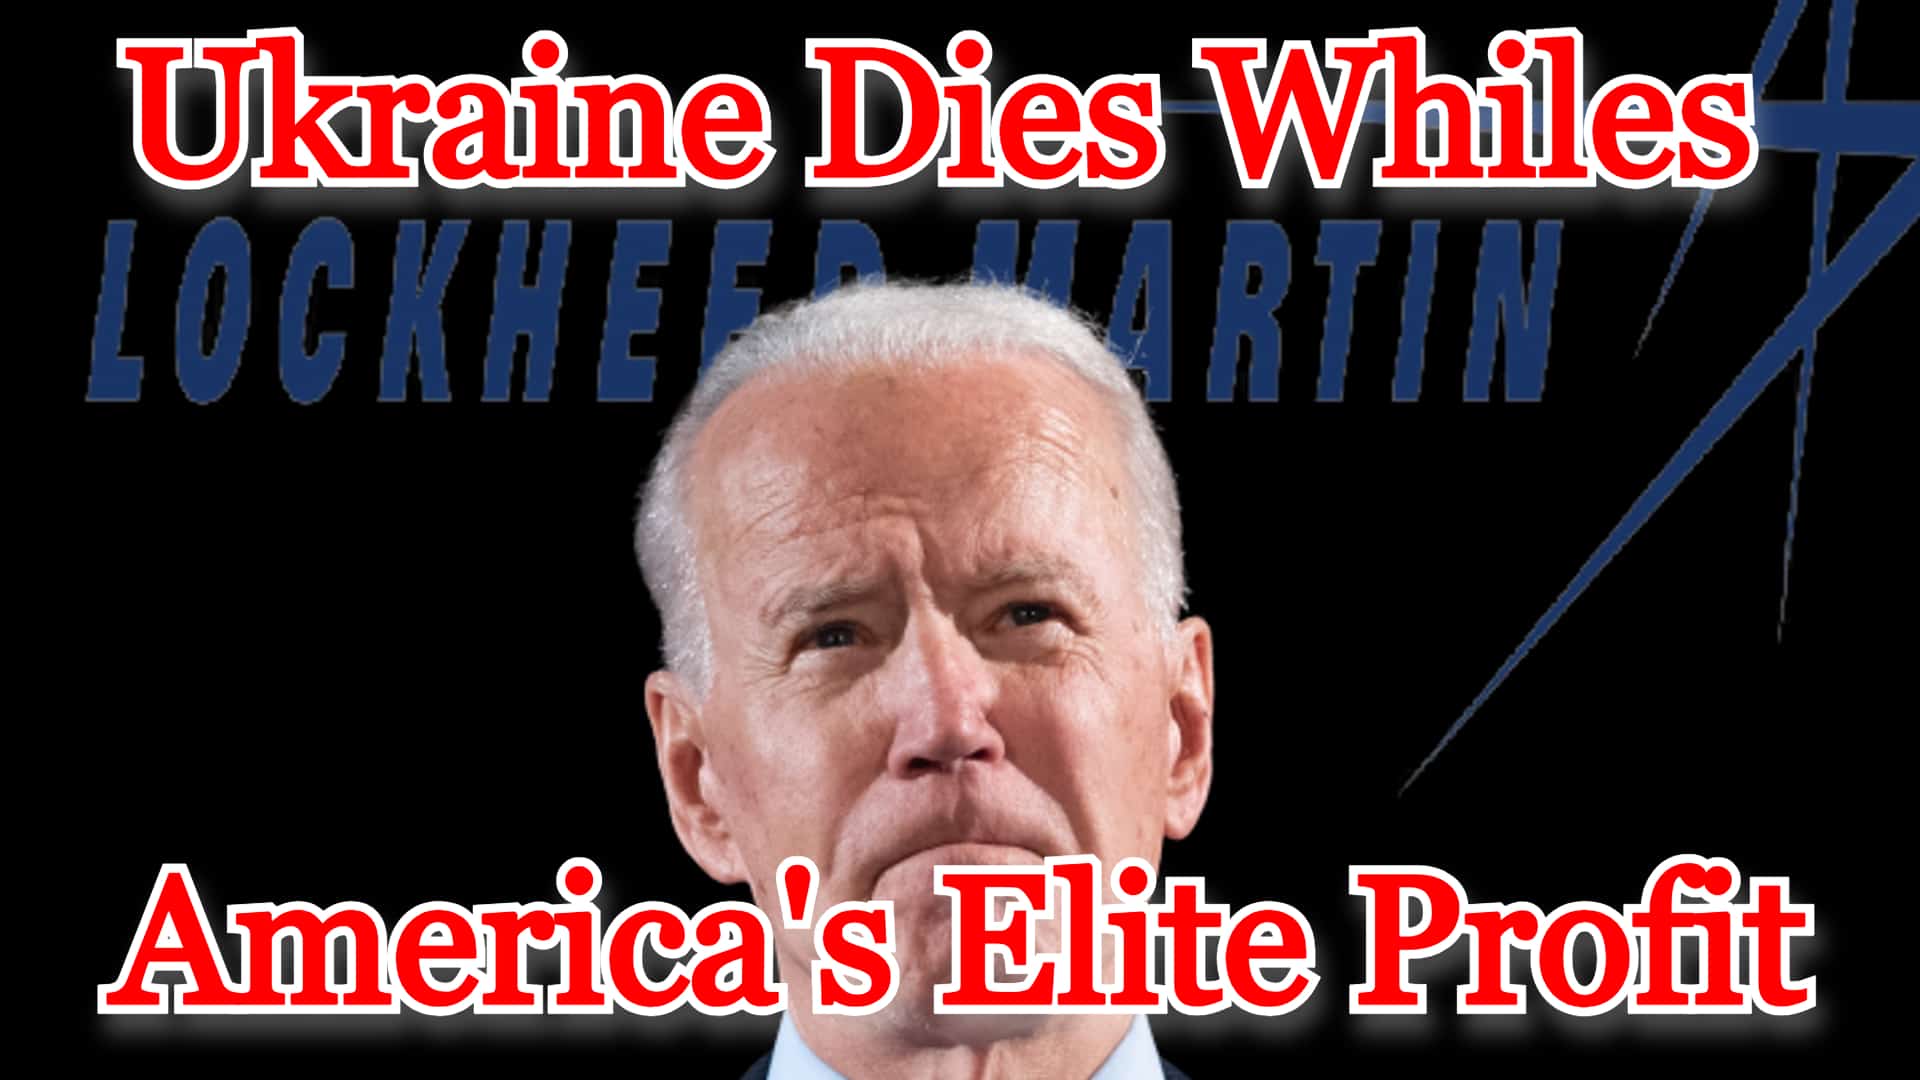 COI #449: Ukraine Dies Whiles America’s Elite Profit